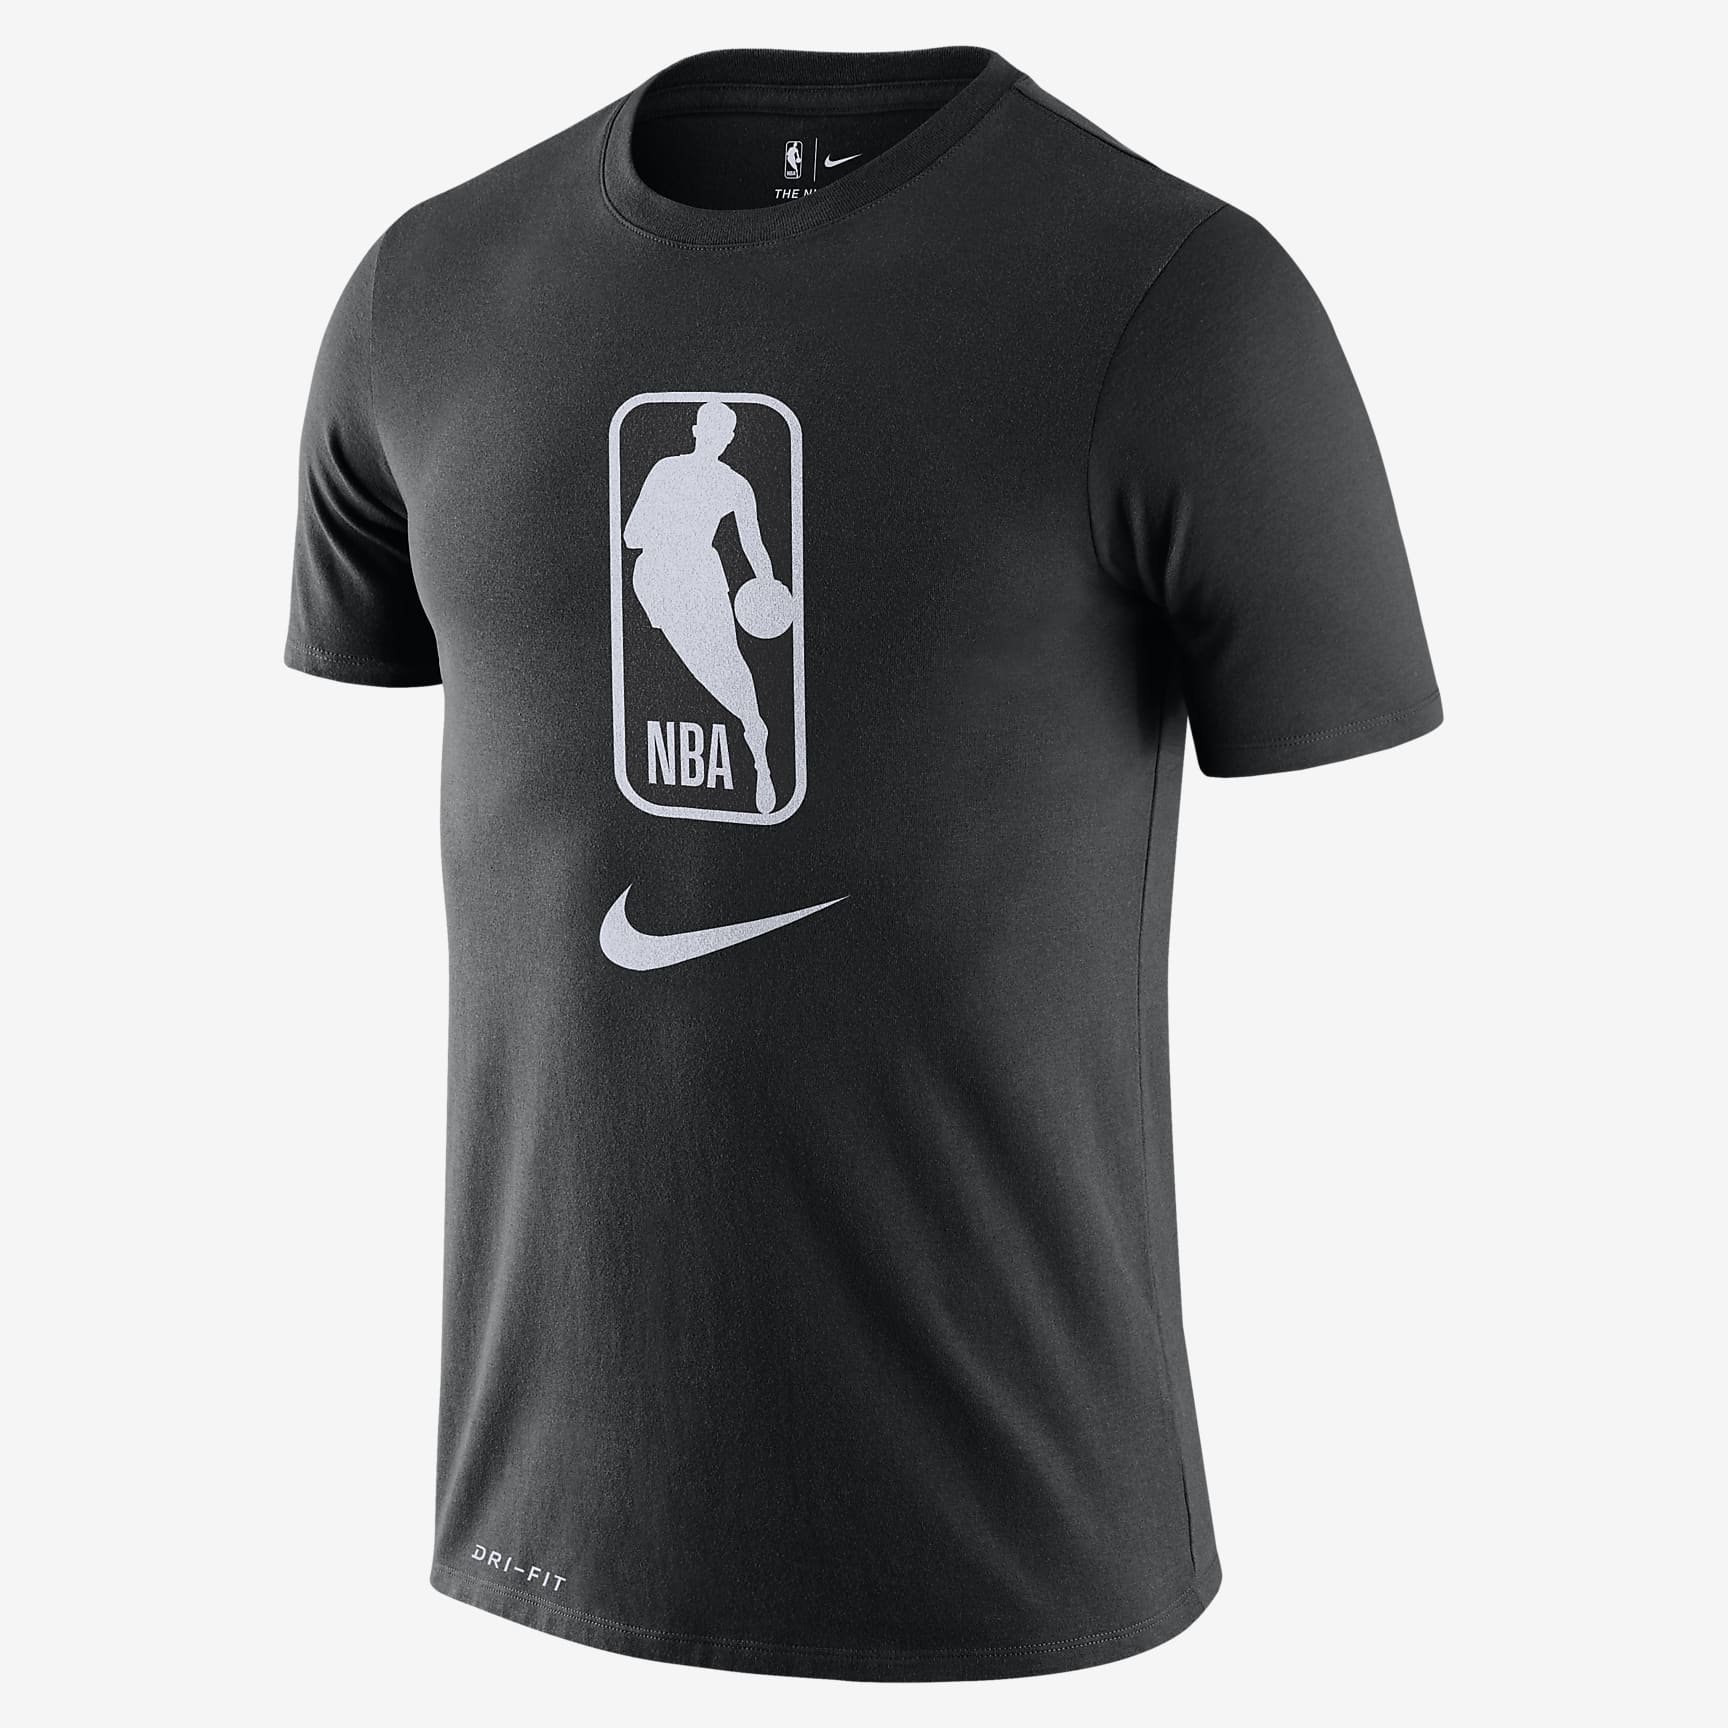 Team 31 Men's Nike Dri-FIT NBA T-Shirt - Black/White